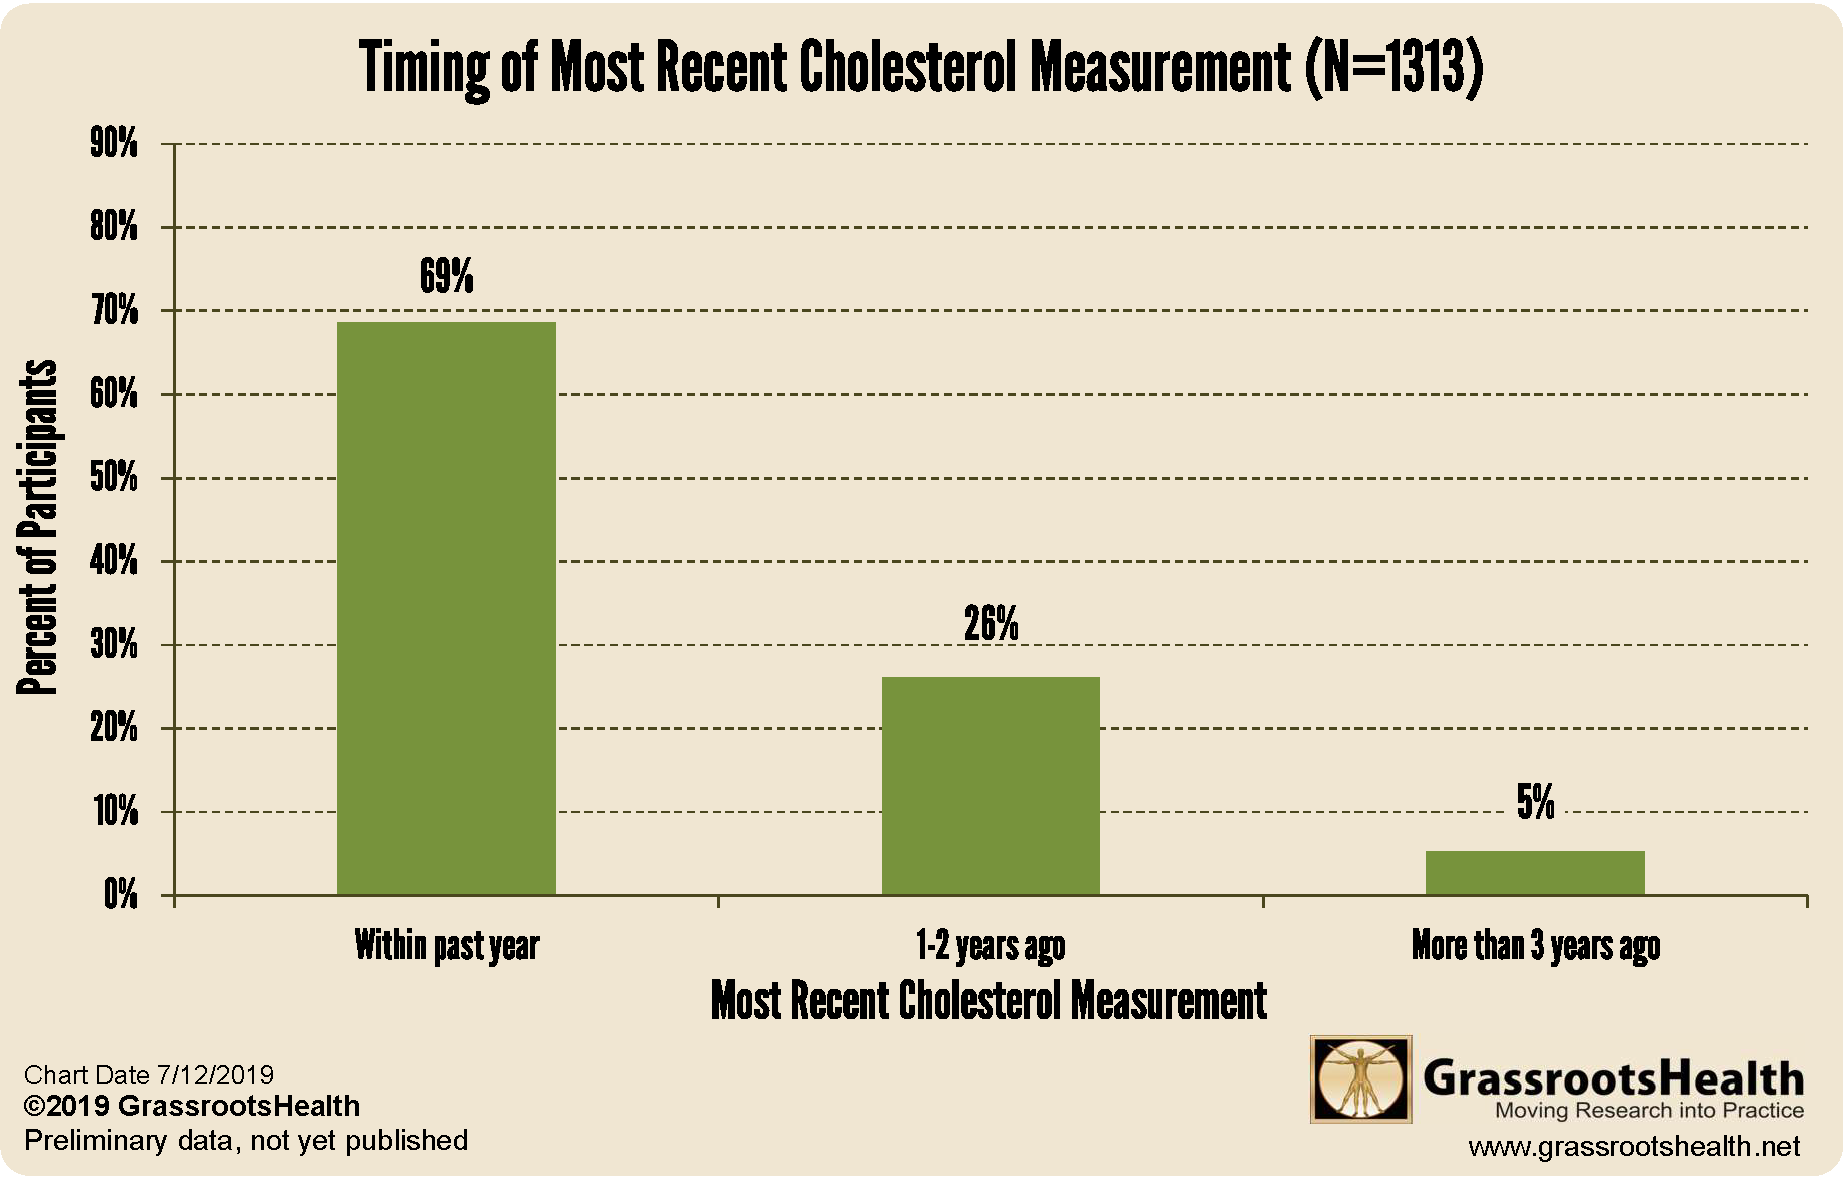 Cholesterol Levels Chart